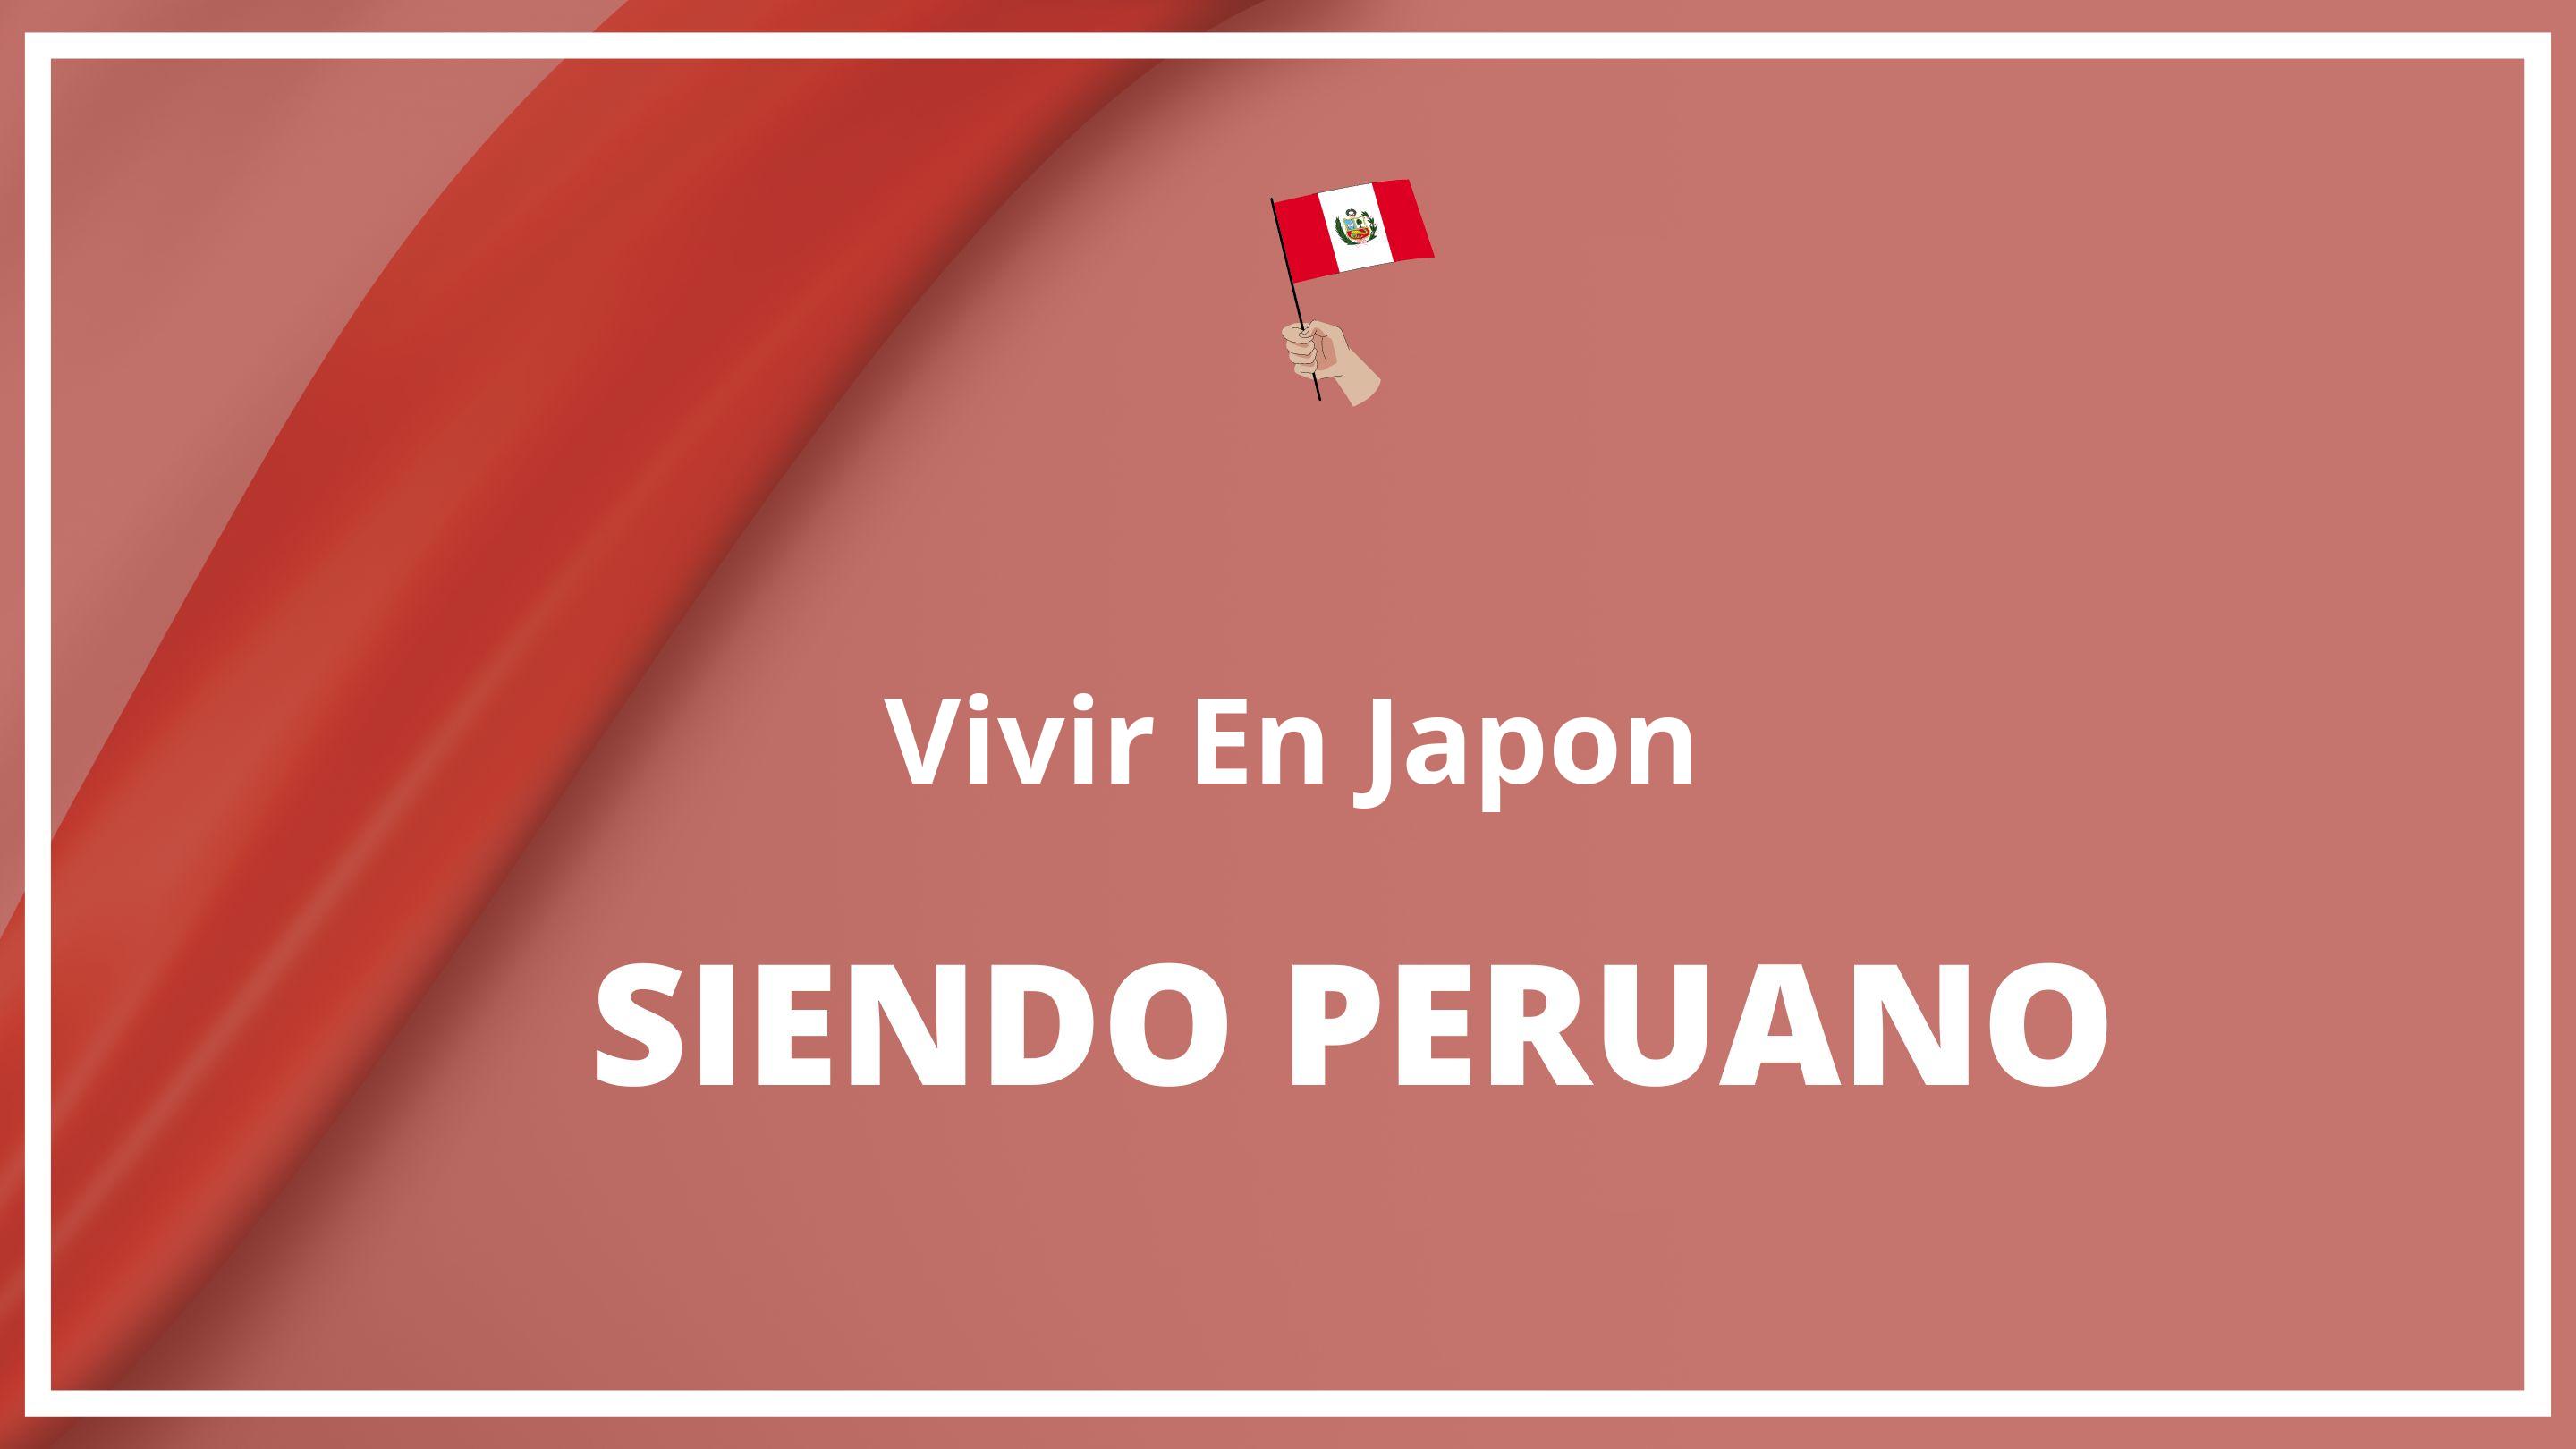 Como vivir en japon siendo peruano